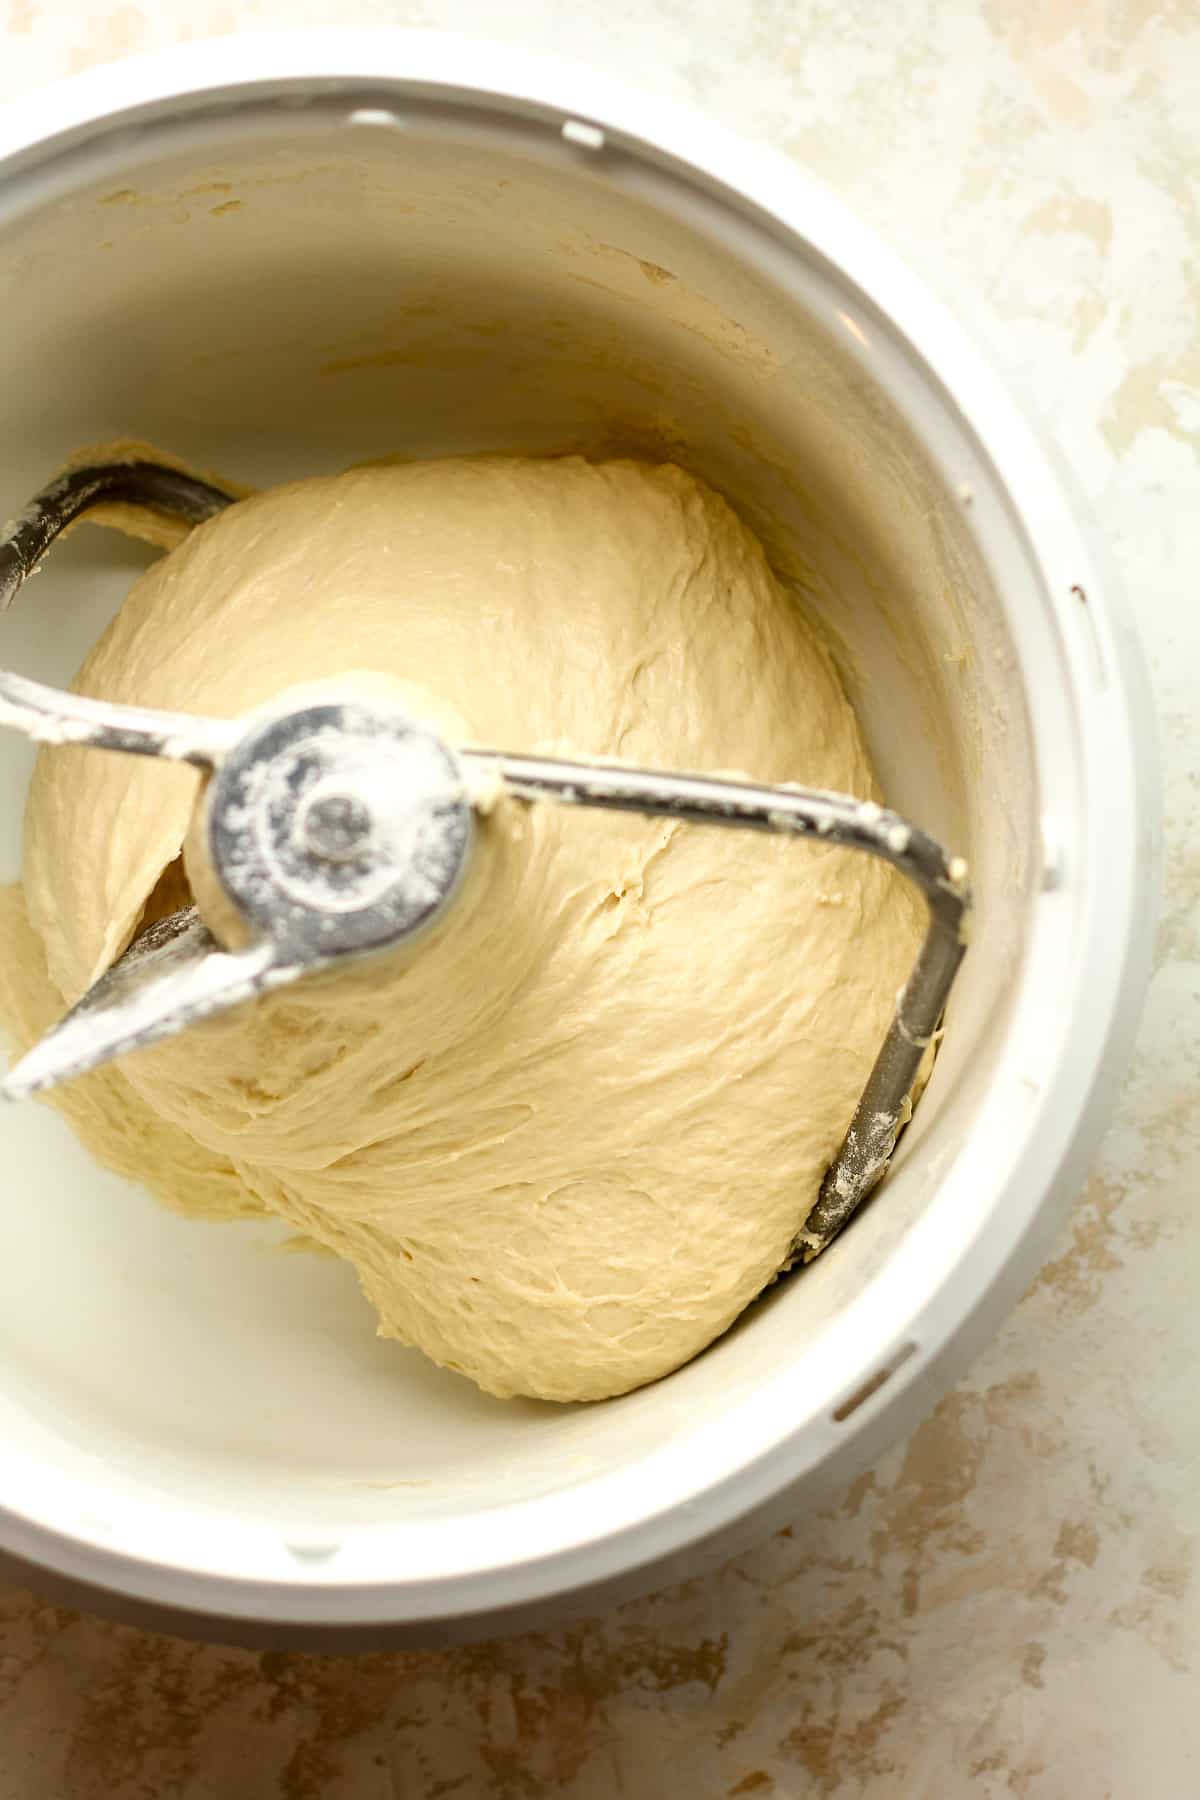 A mixer with the bread dough.